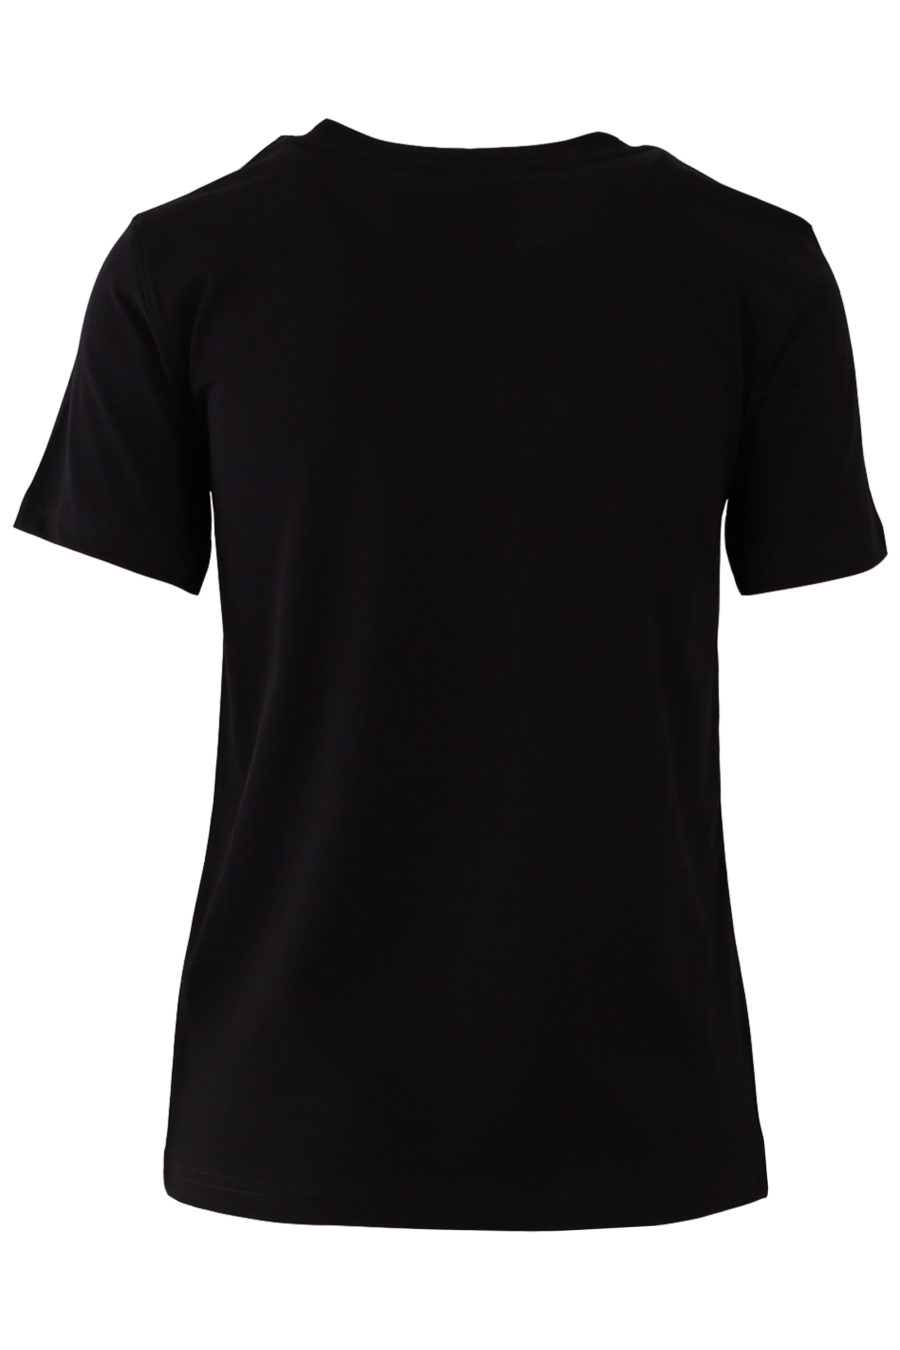 T-shirt noir avec logo blanc - 19eddf71d8a8013bd48d7ef4165a8a8e4937db35